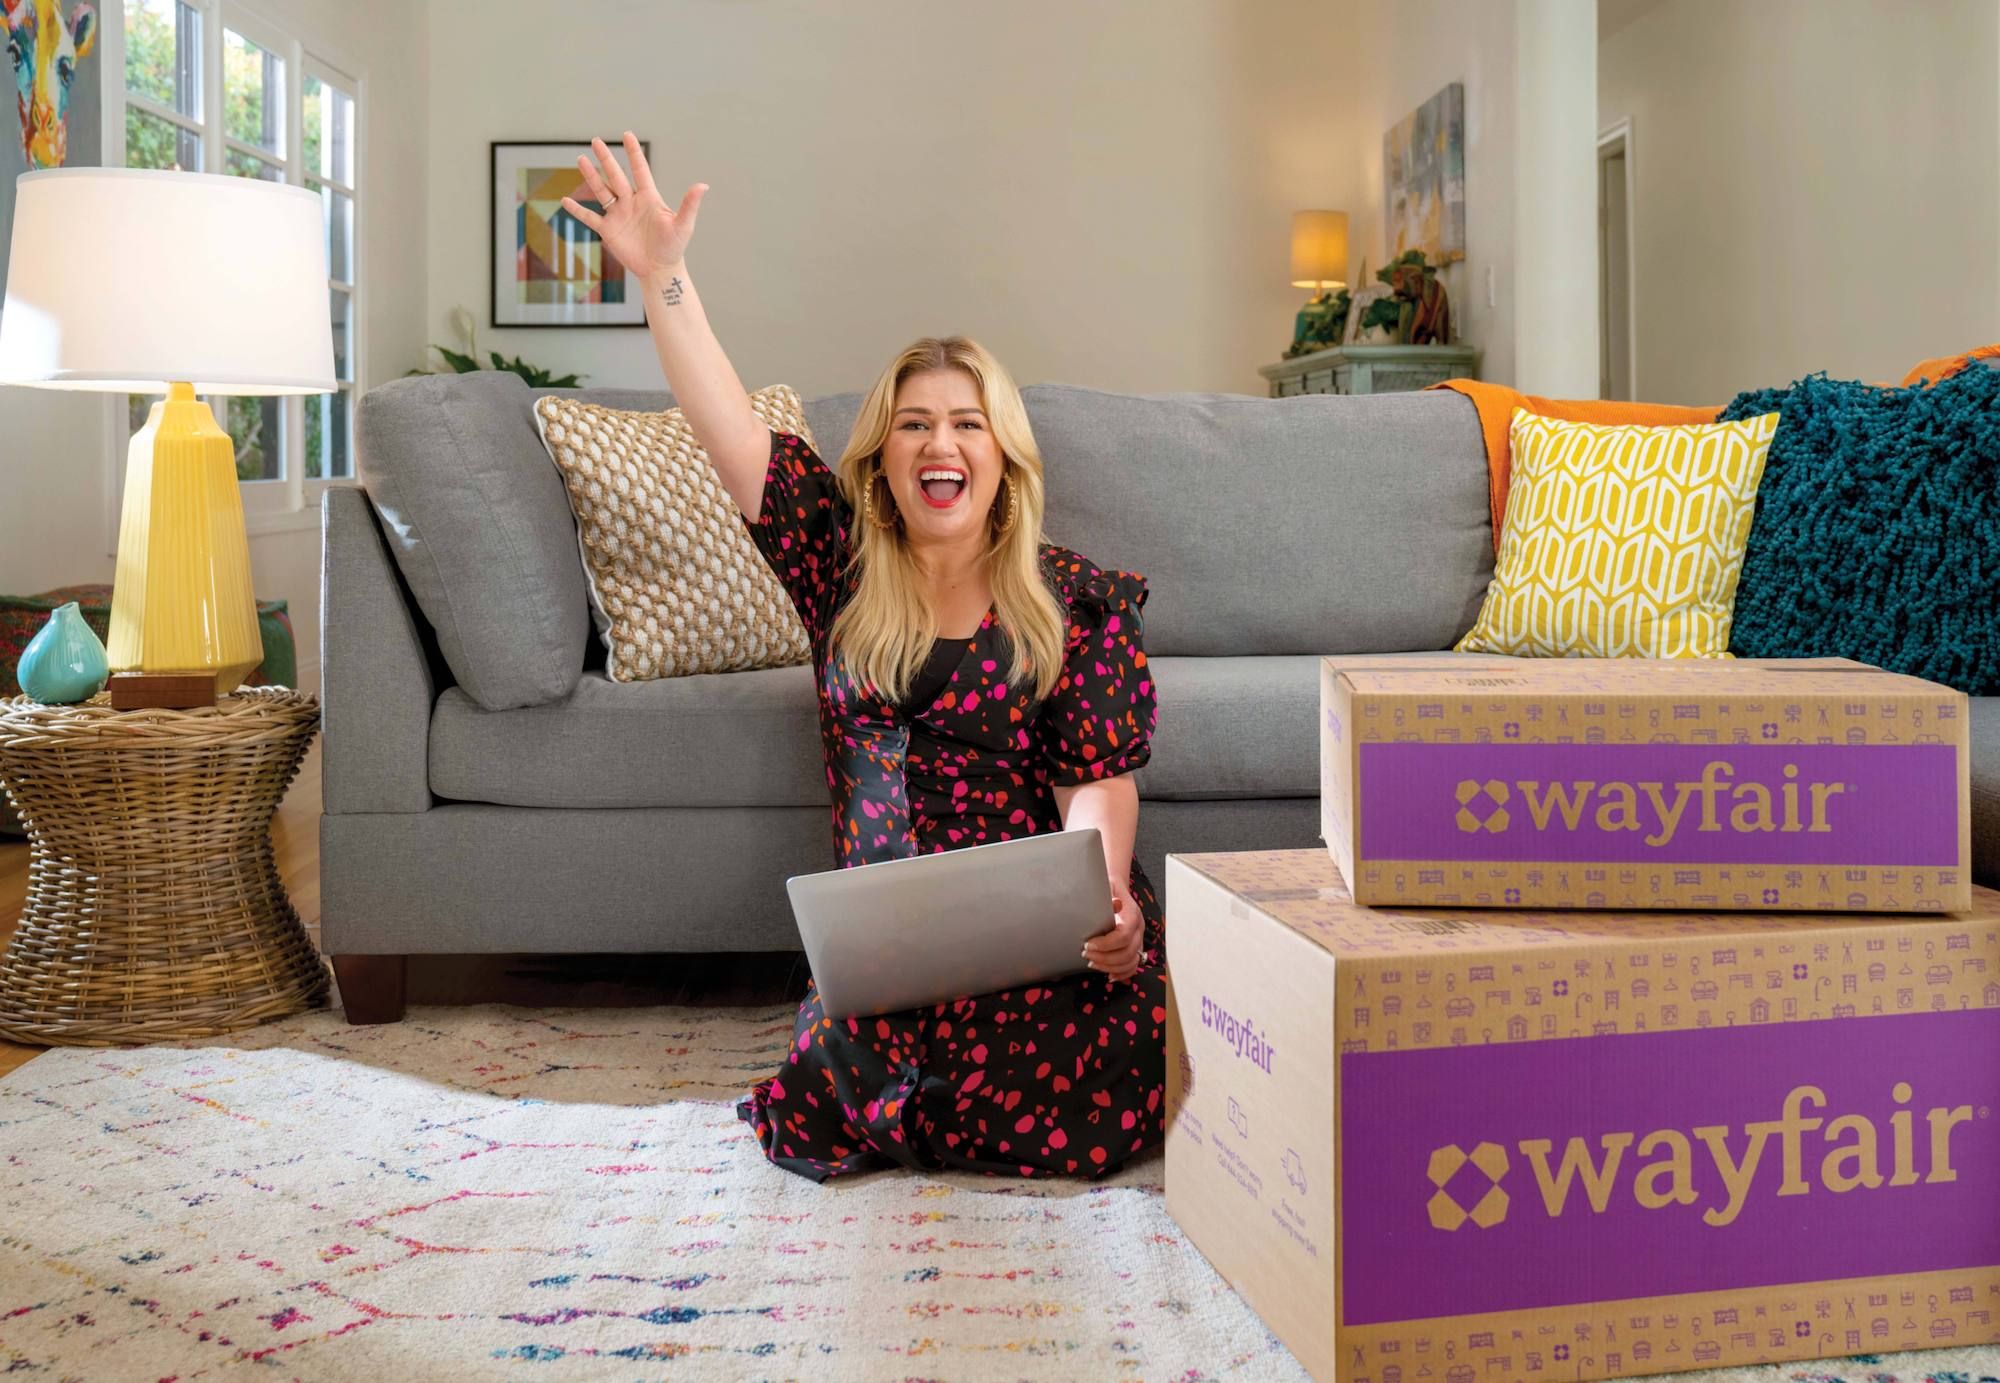 La primera embajadora de la marca Wayfair será la cantante y presentadora de "The Voice" Kelly Clarkson